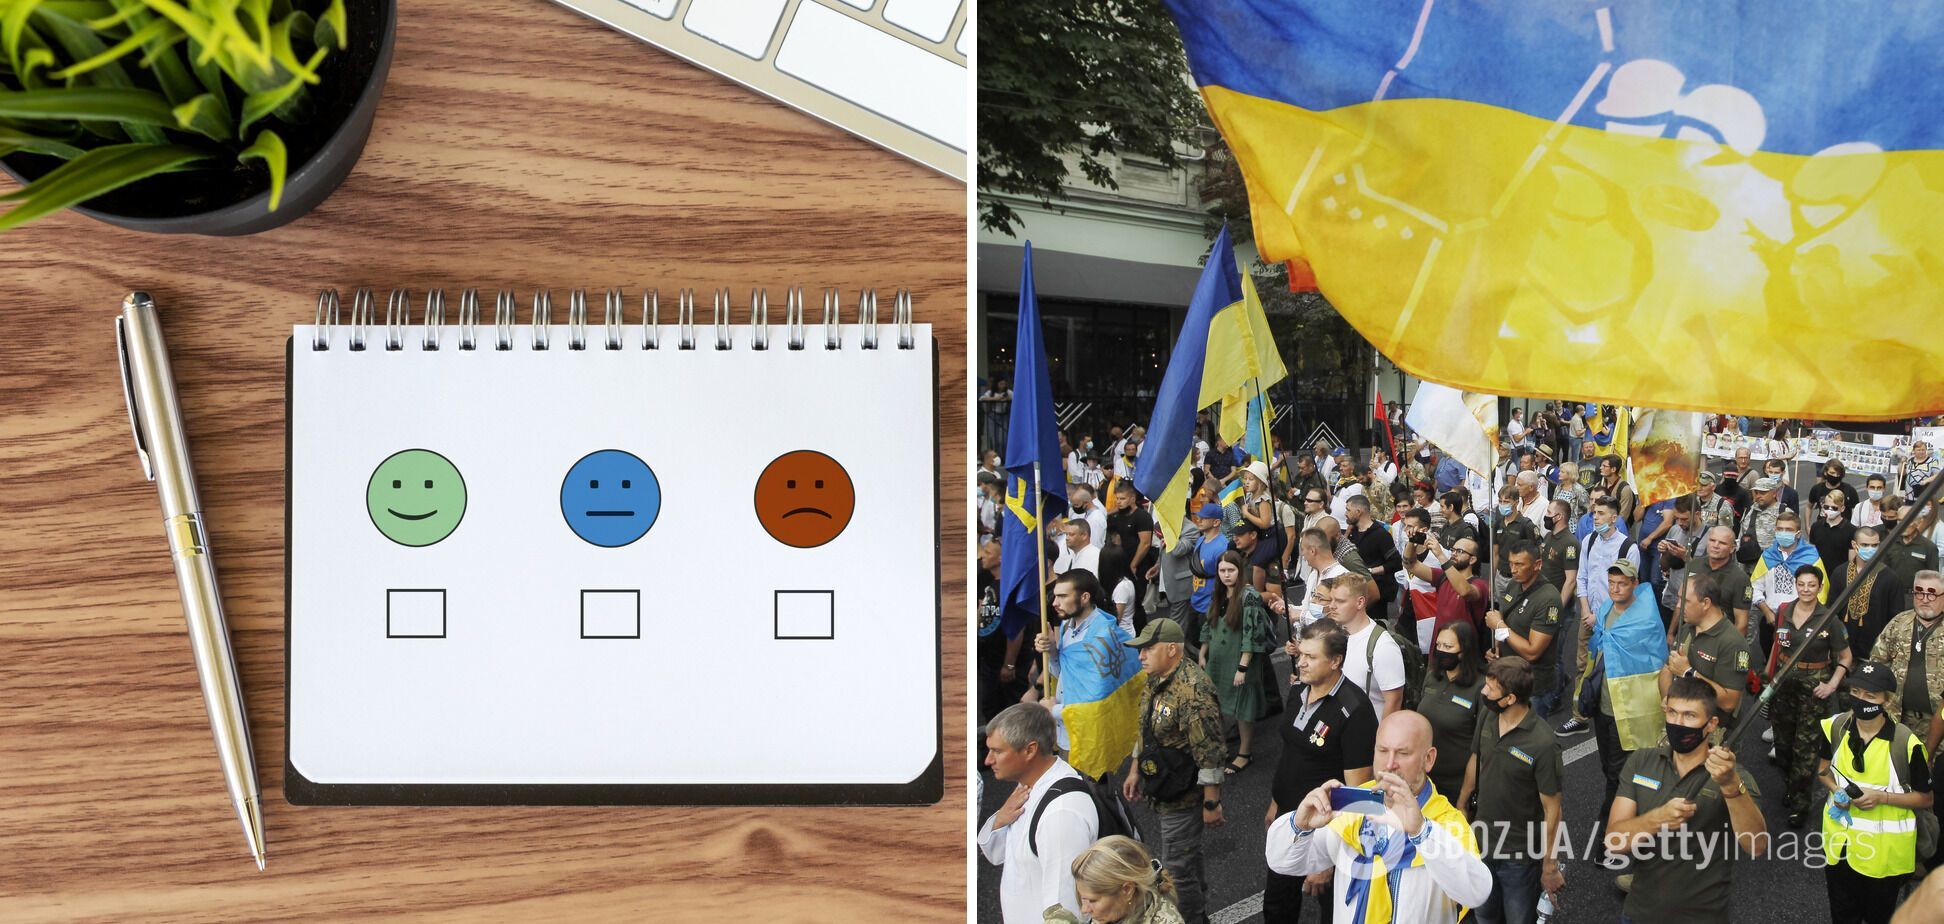 Многие граждане считают, что Украина движется в неправильном направлении